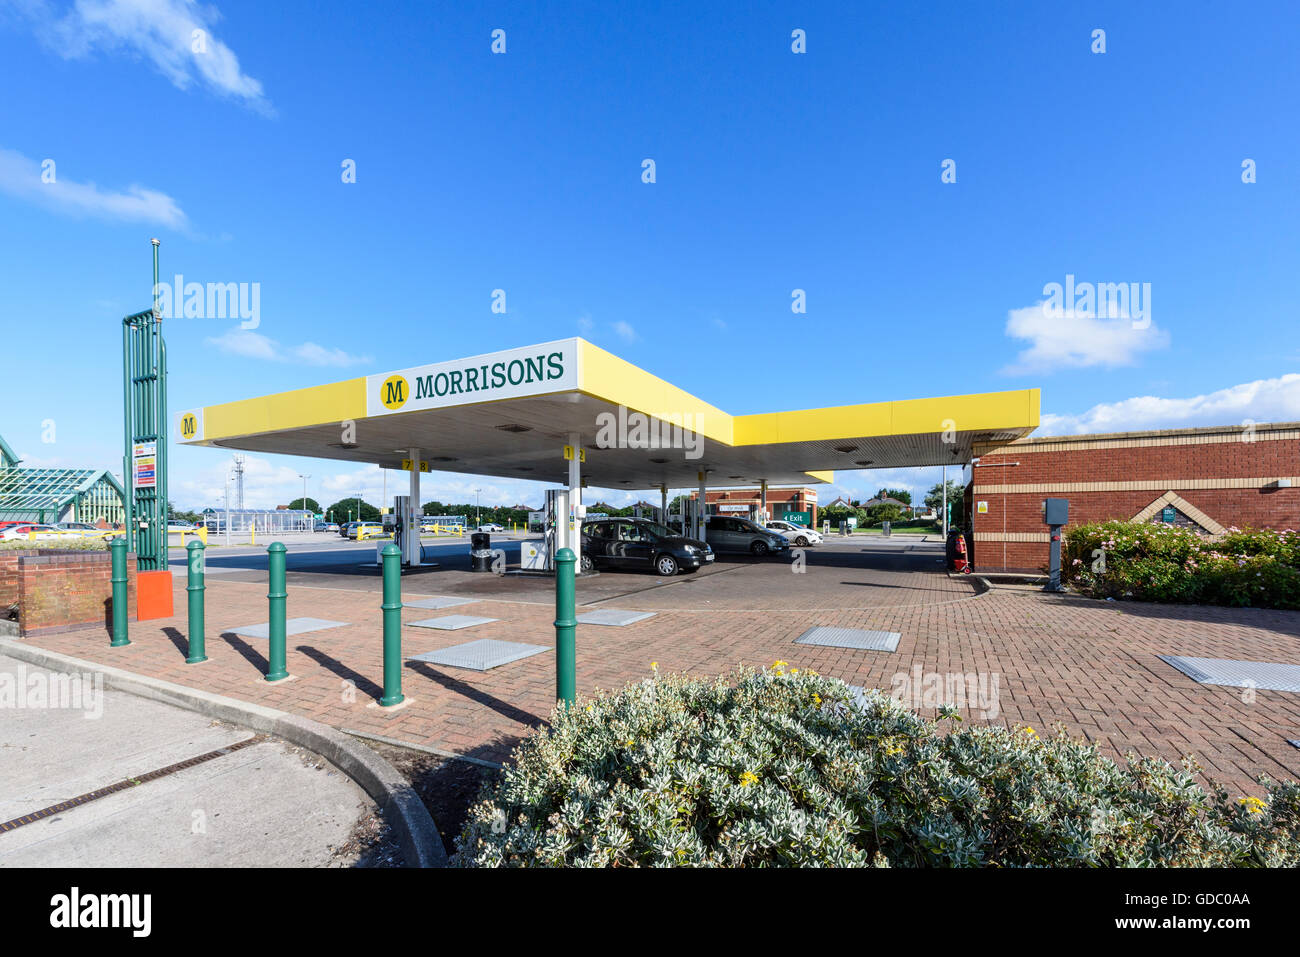 Voitures plein de carburant à une station essence de supermarché Morrisons dans Blackpool, Lancashire, UK Banque D'Images